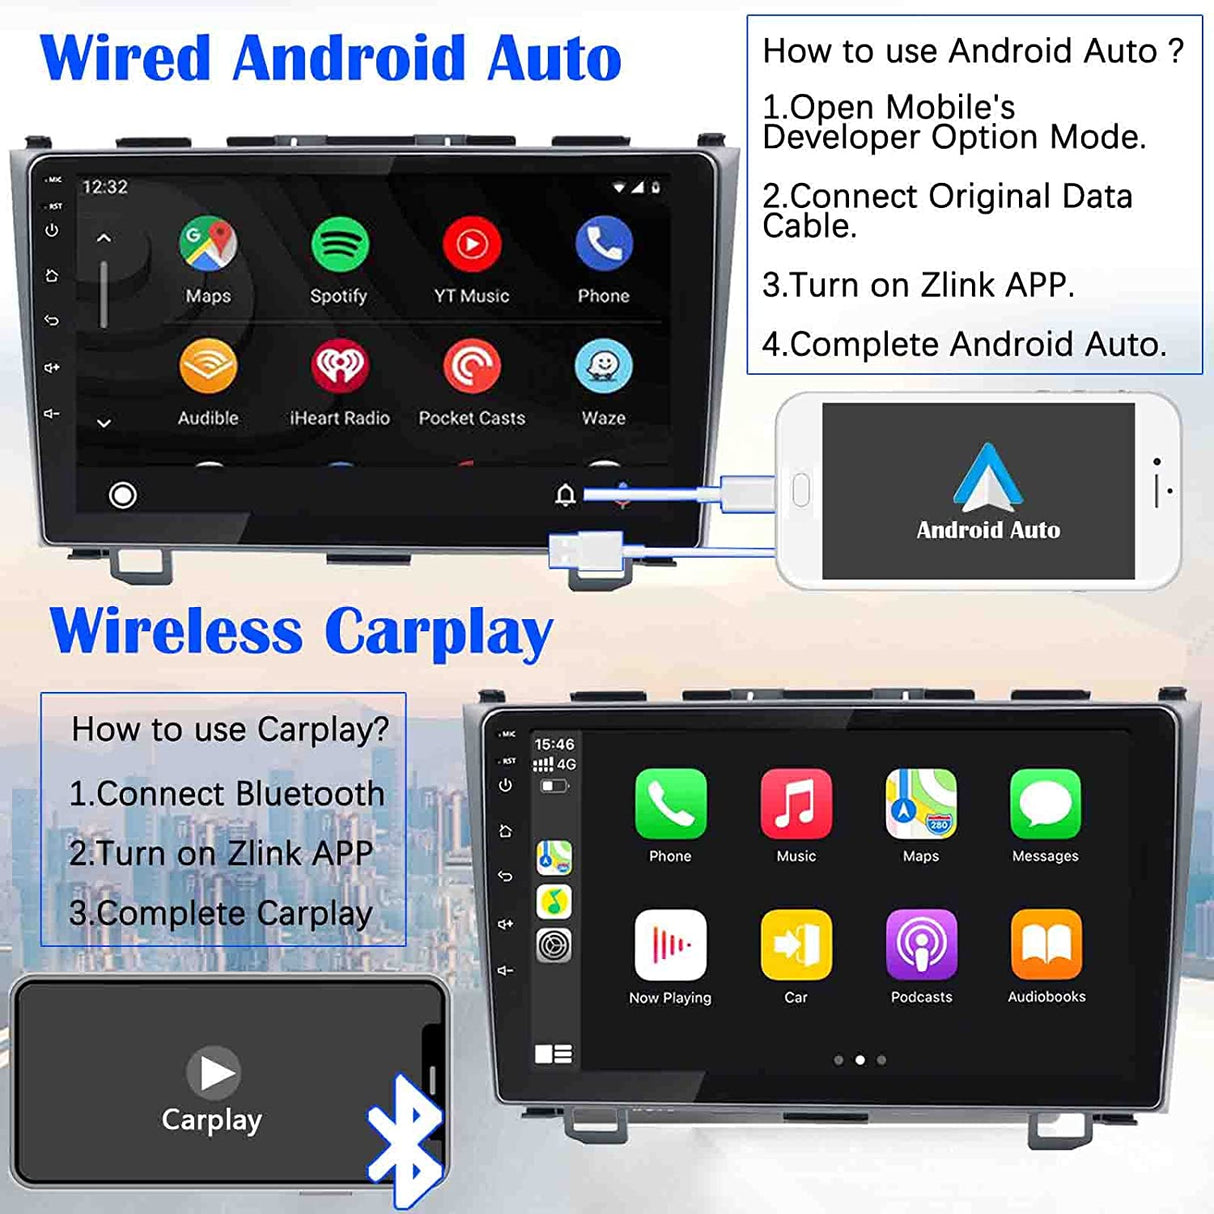 Binize Honda CRV 2006-2011 compatible con CarPlay android auto con dashkit